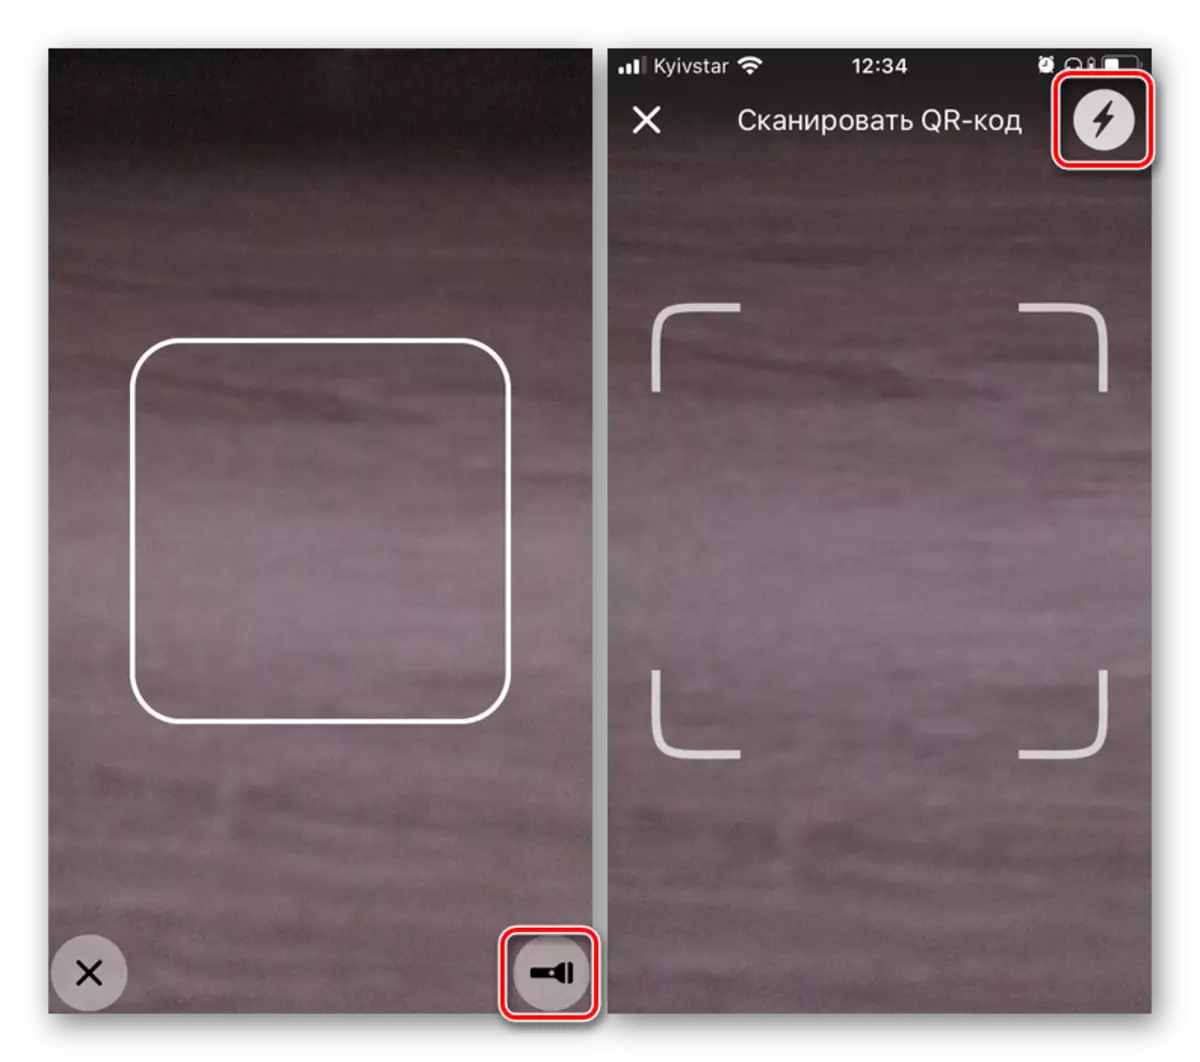 إيقاف تشغيل الفلاش في تطبيقات الطرف الثالث مع الكاميرا على اي فون